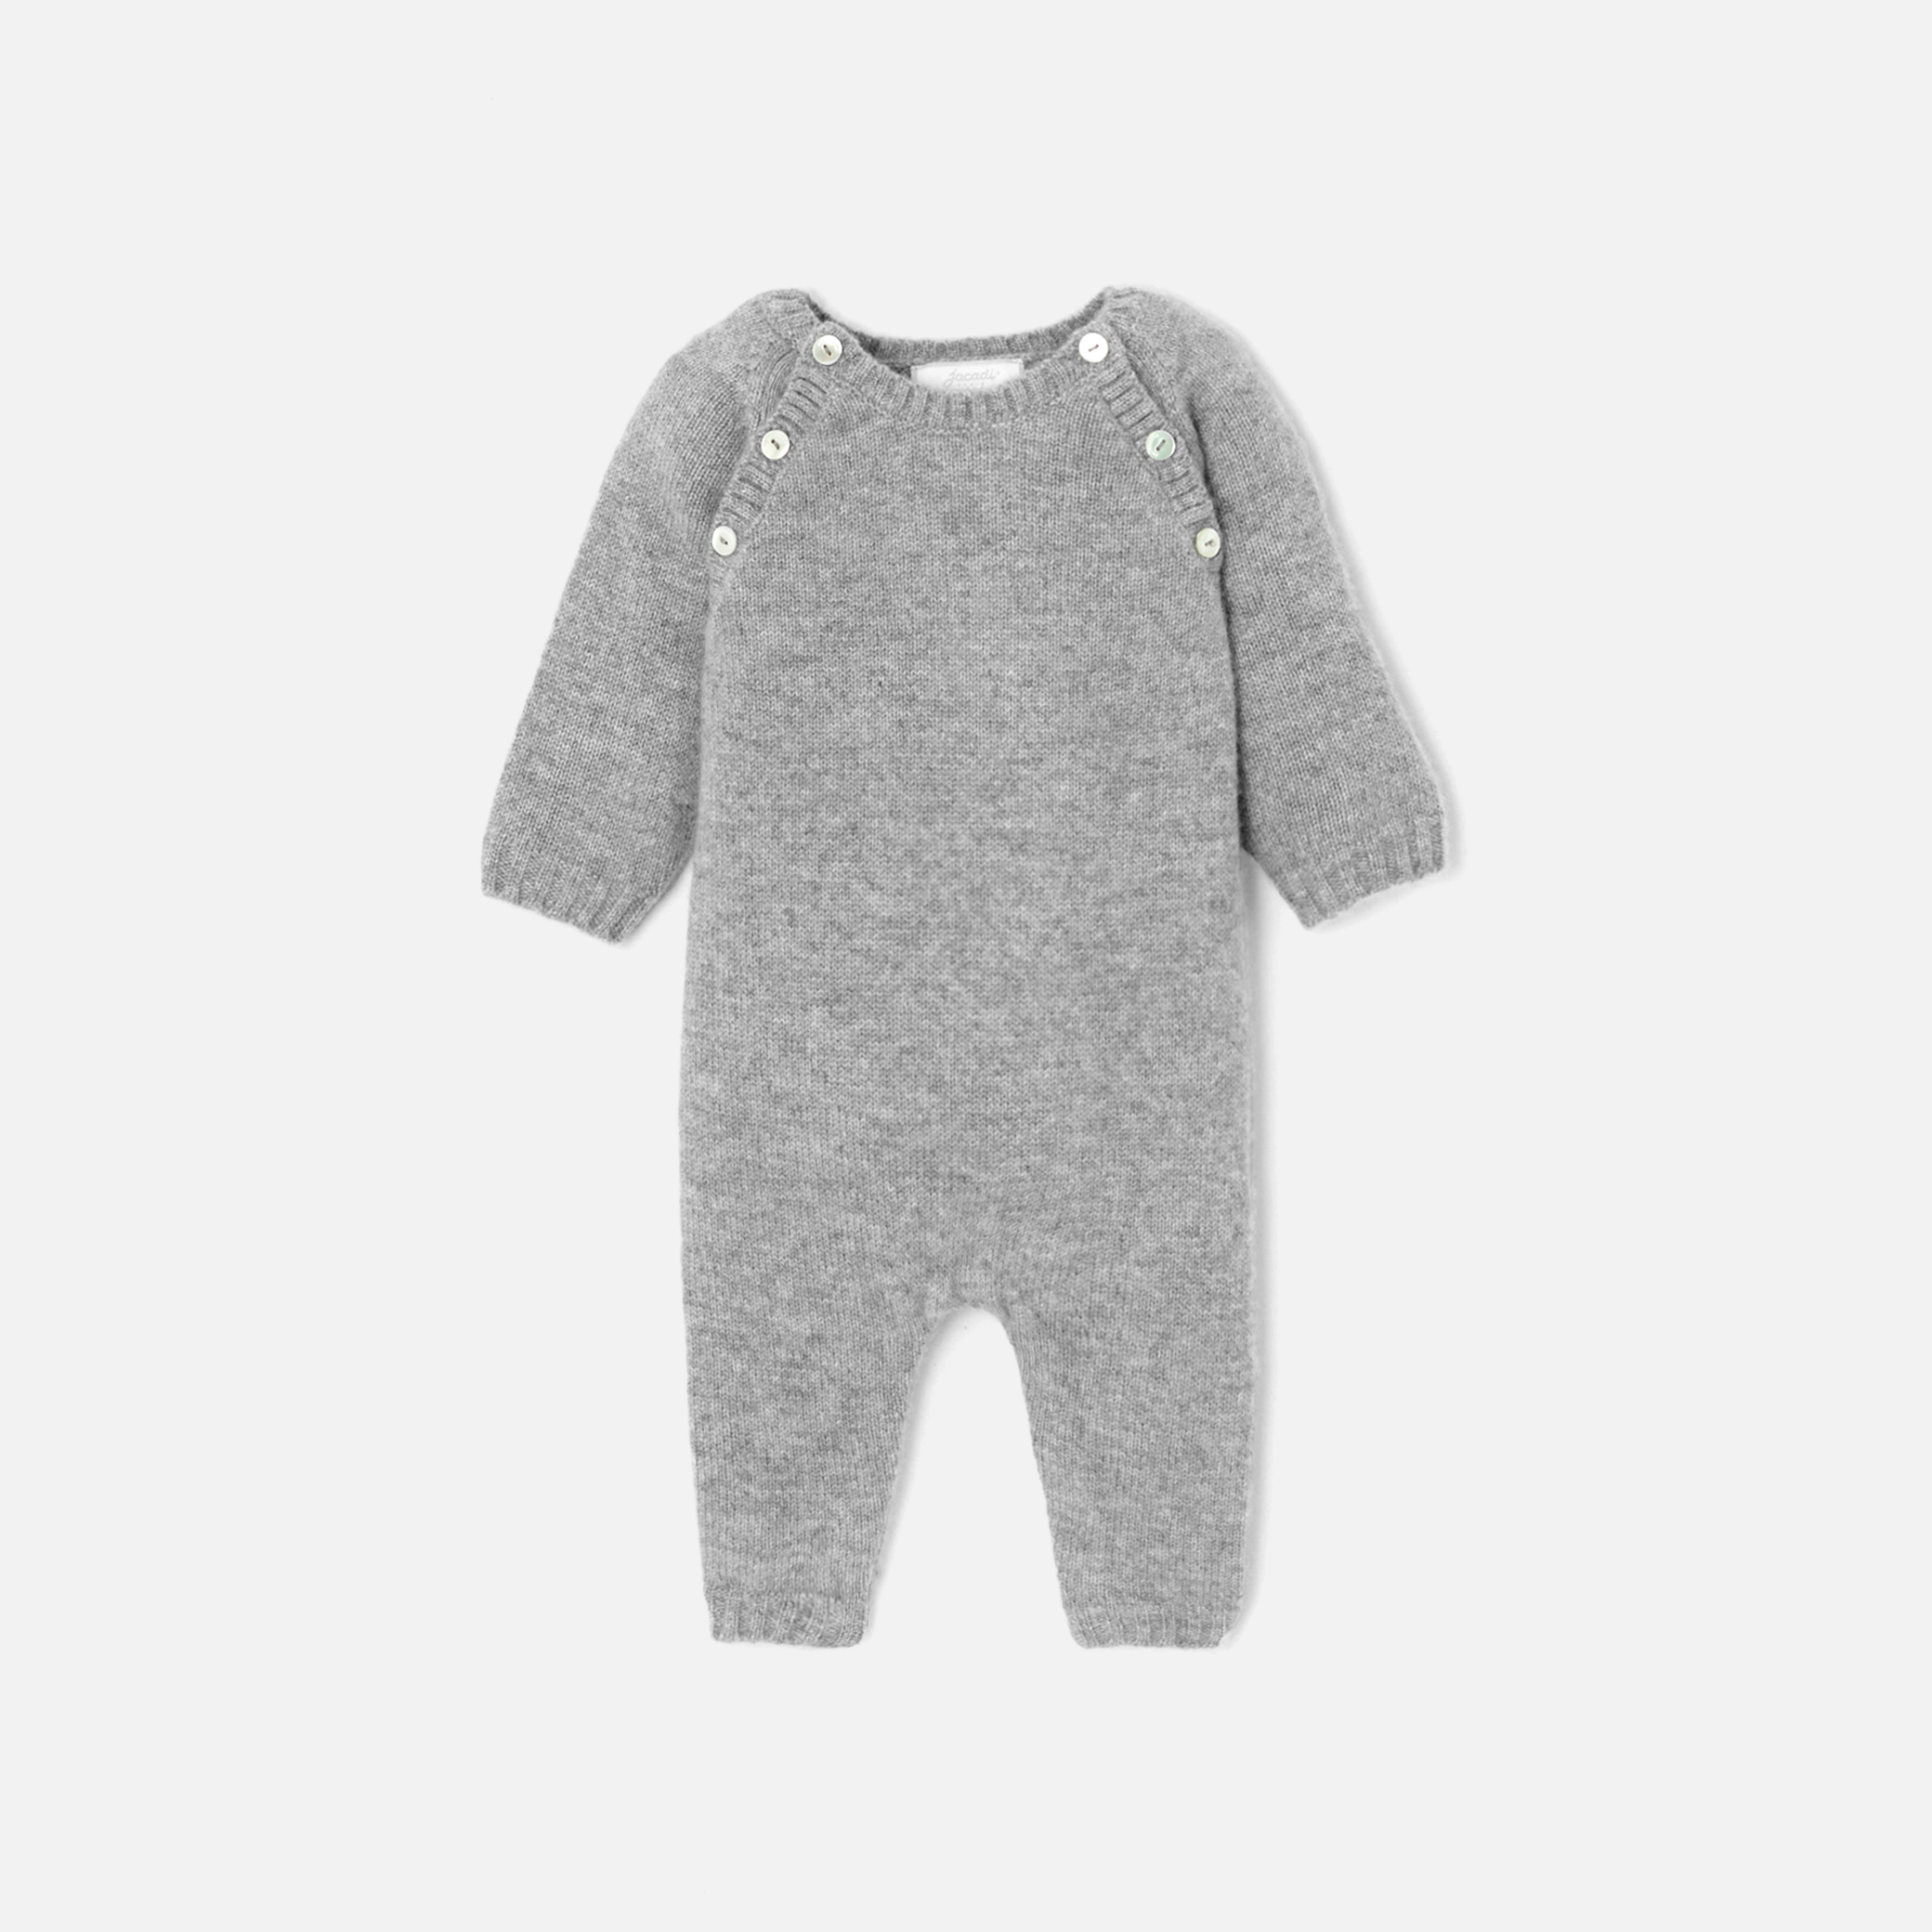 Baby boy cashmere onesie